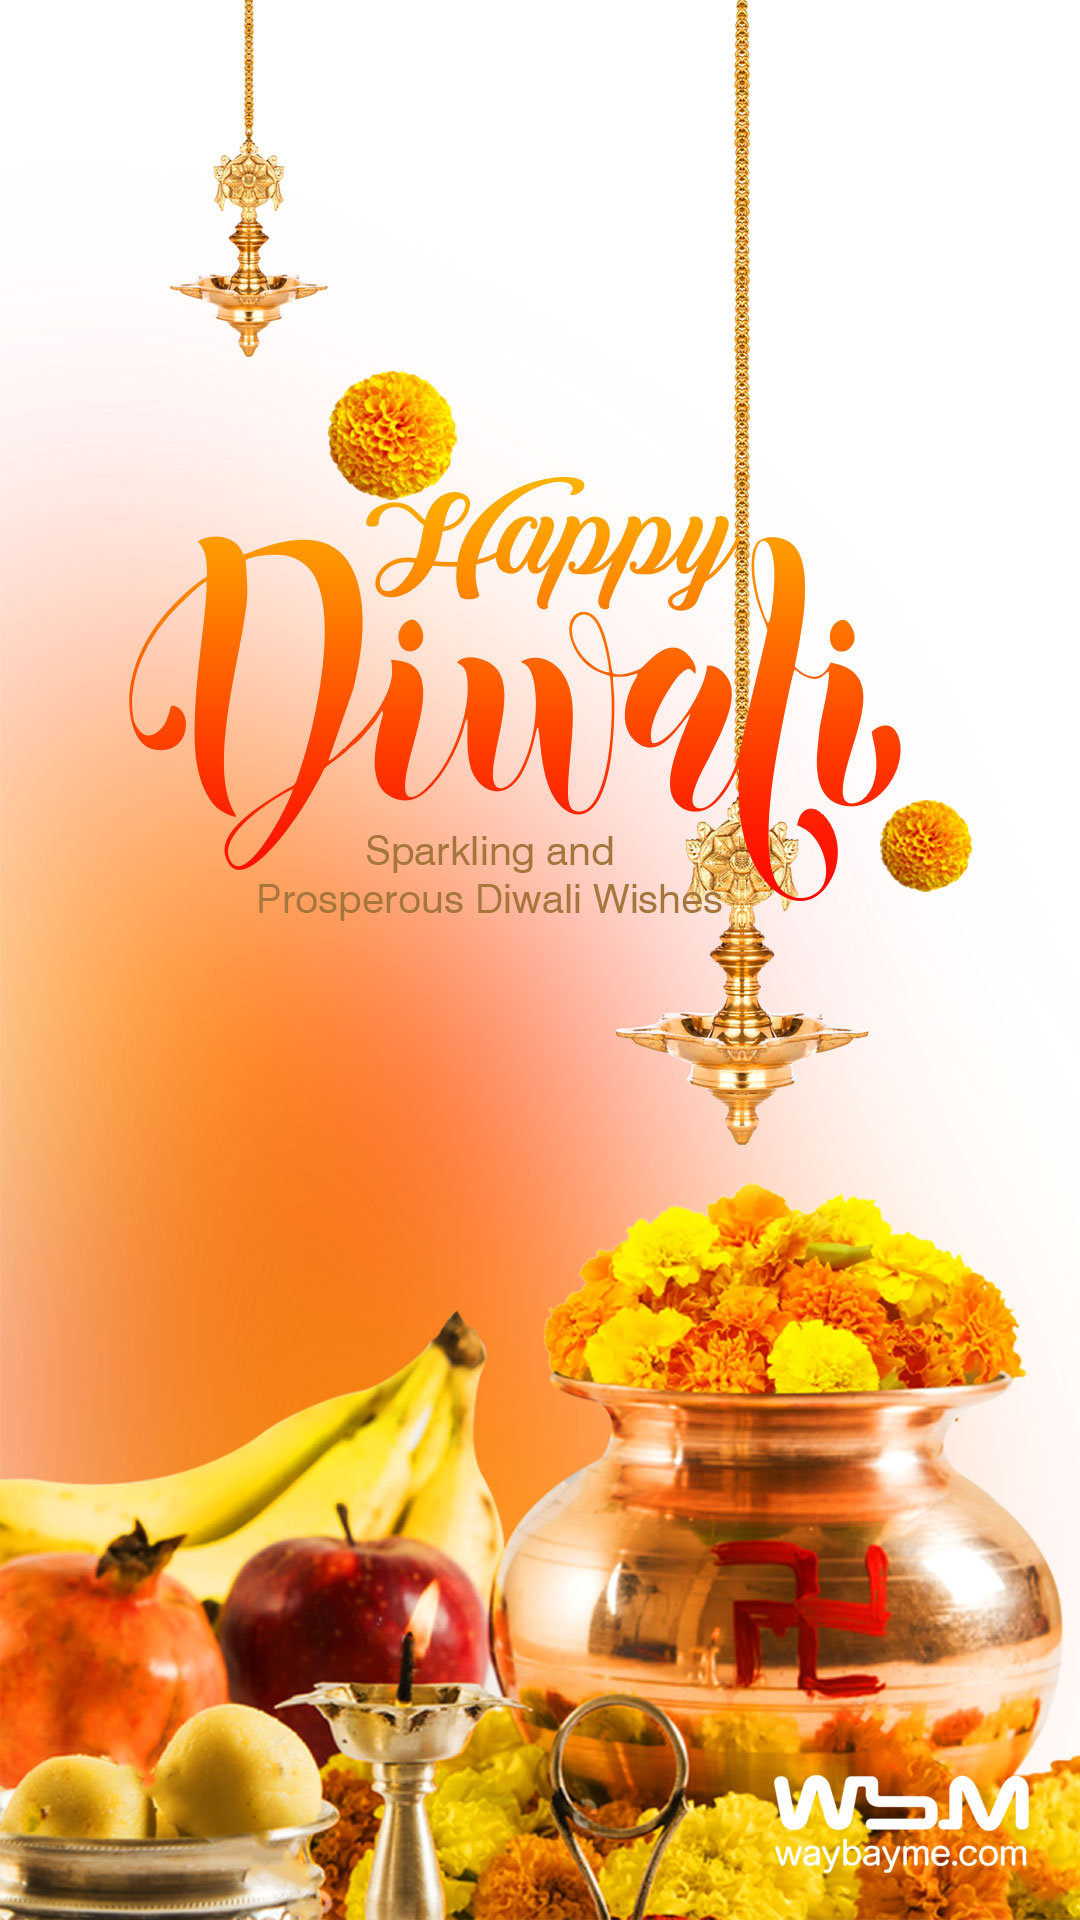 Diwali Images, Diwali Images HD, Diwali msg, Diwali HD Images, Beautiful Diwali Images, Diwali Pictures, Diwali Wishes, Diwali Greetings, Diwali Wallpapers, Best Diwali Images, Diwali Messages, Diwali Whatsapp Status, Best Diwali Greetings